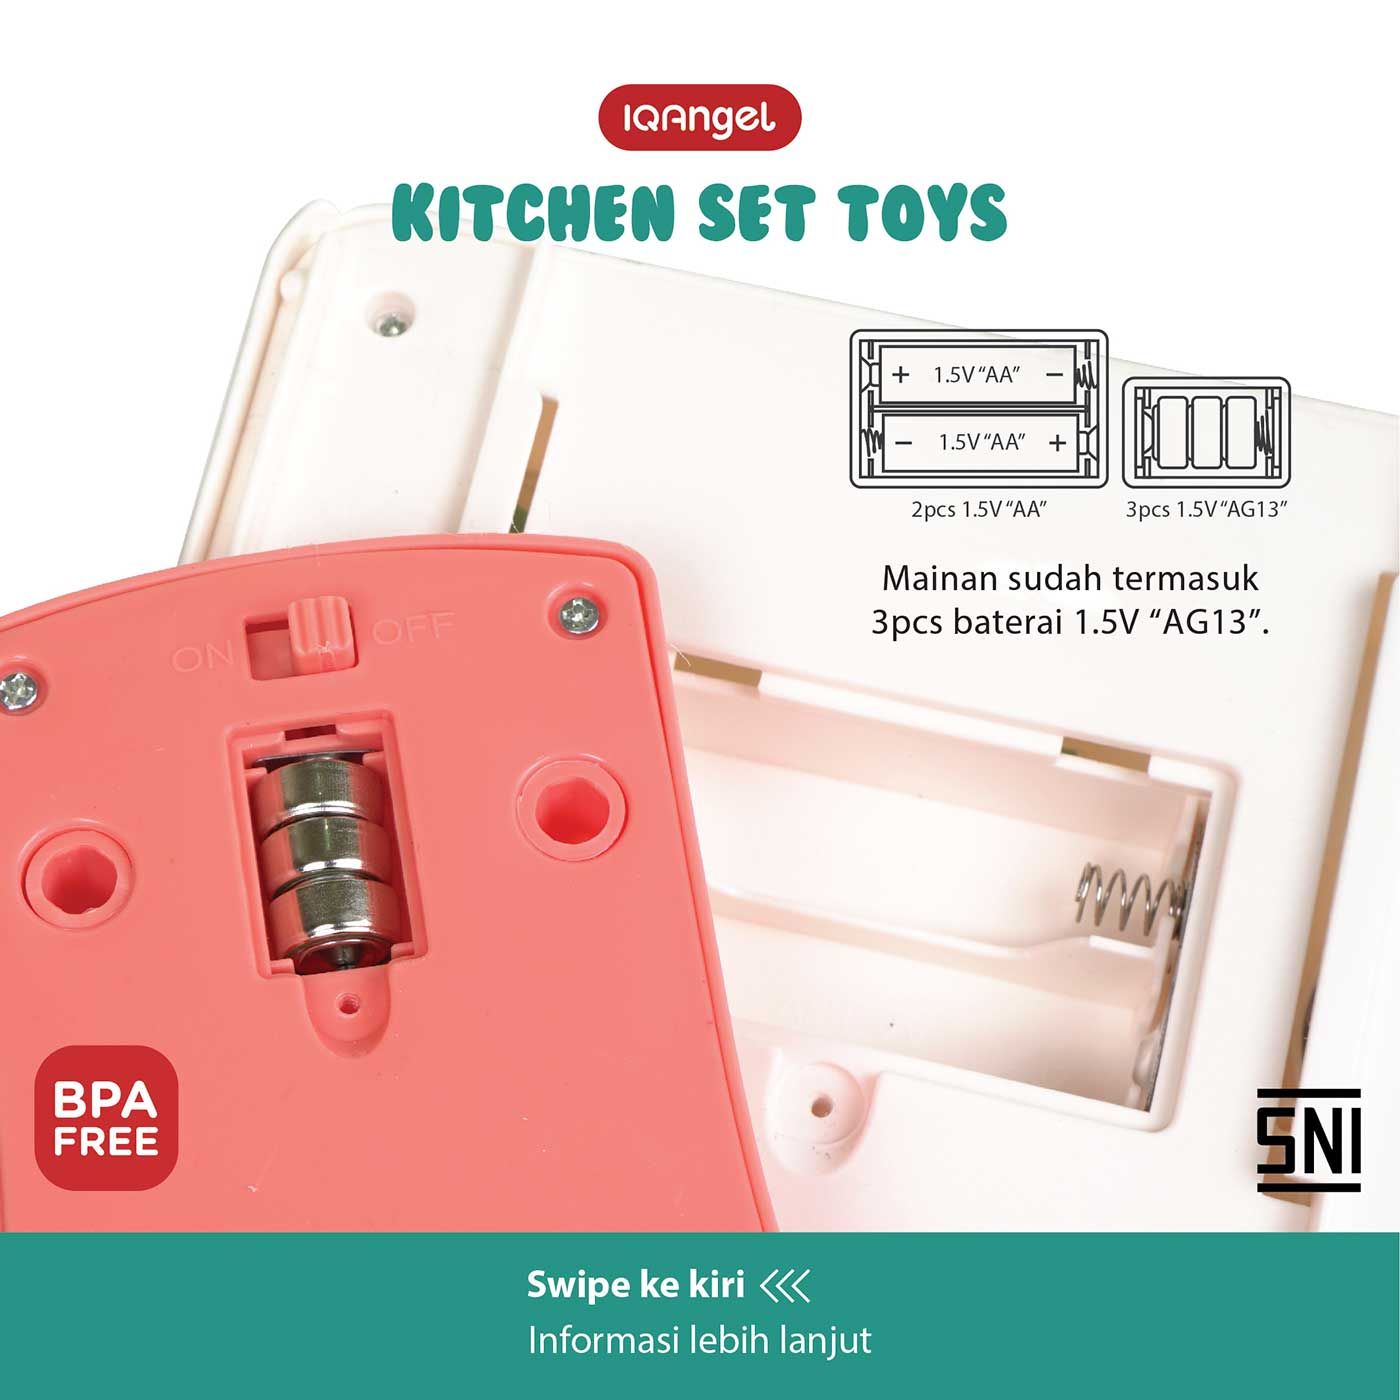 IQ Angel Kitchen Set Toys - 8